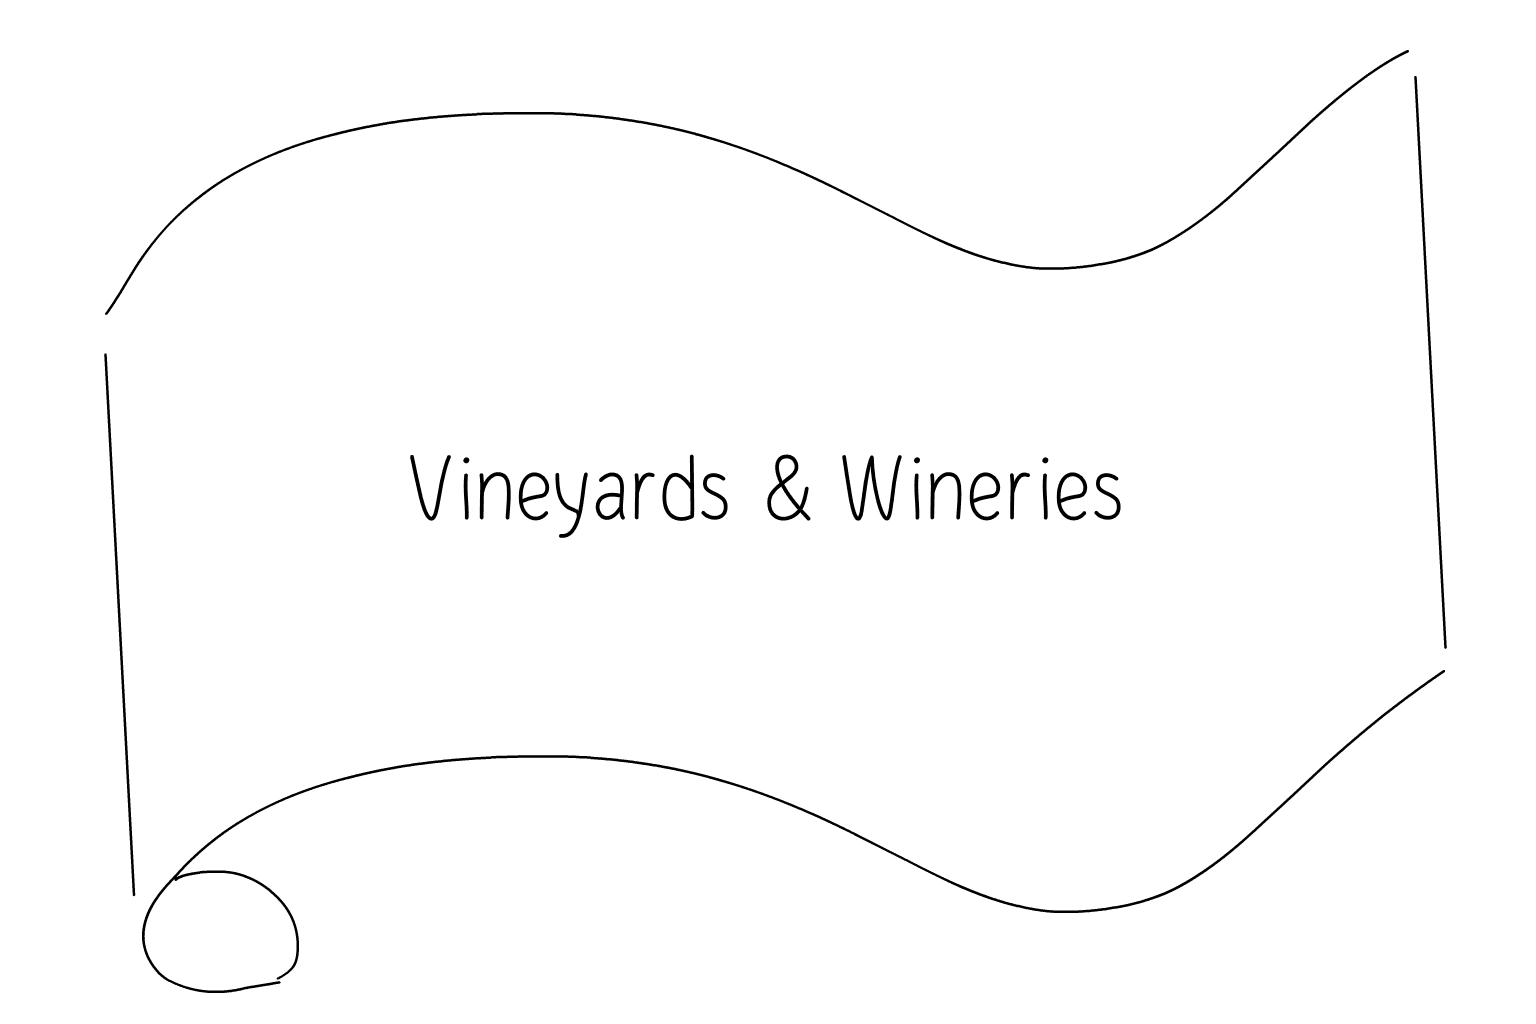 Иллюстрация свадебного виноградника и винодела